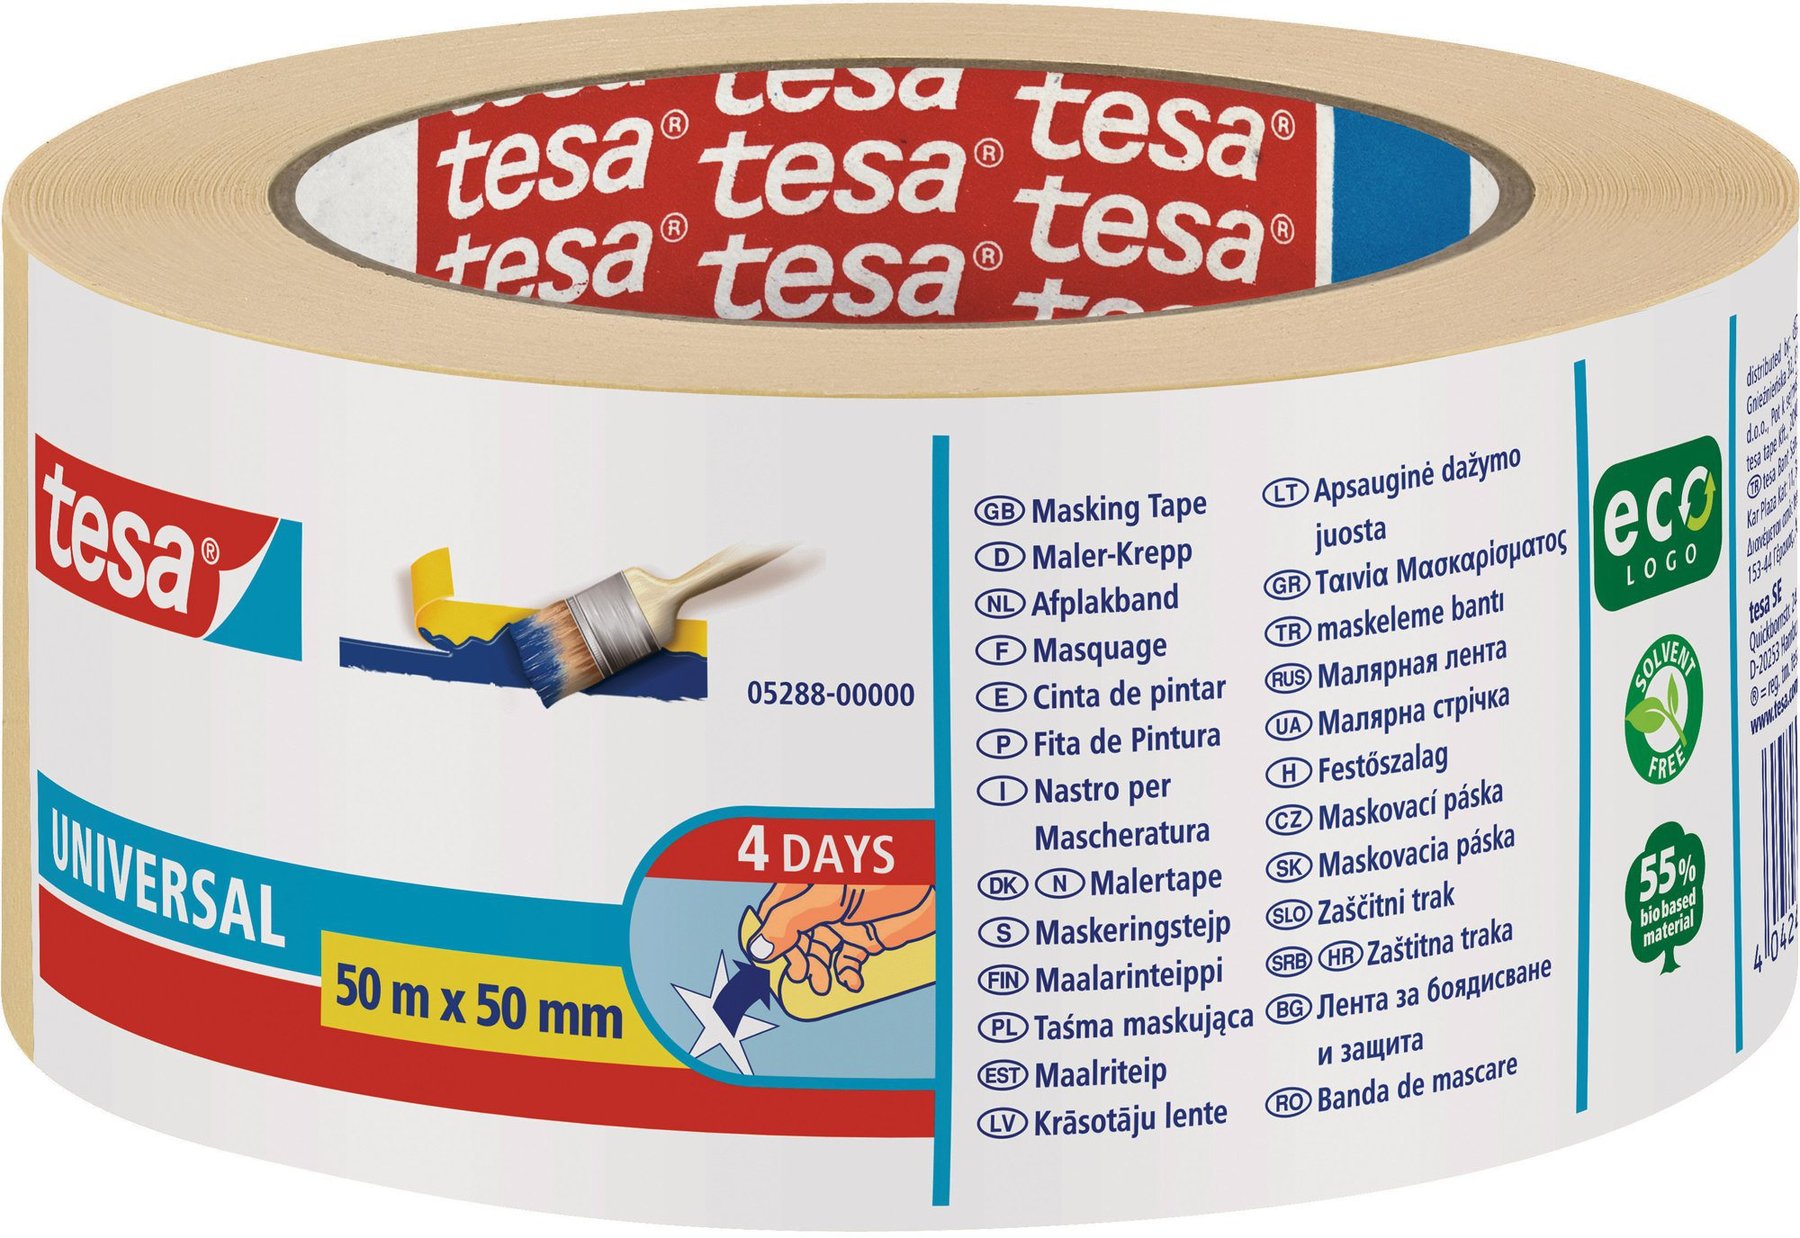 50m:19mm Tesa Malerband Basic ecoLogo 